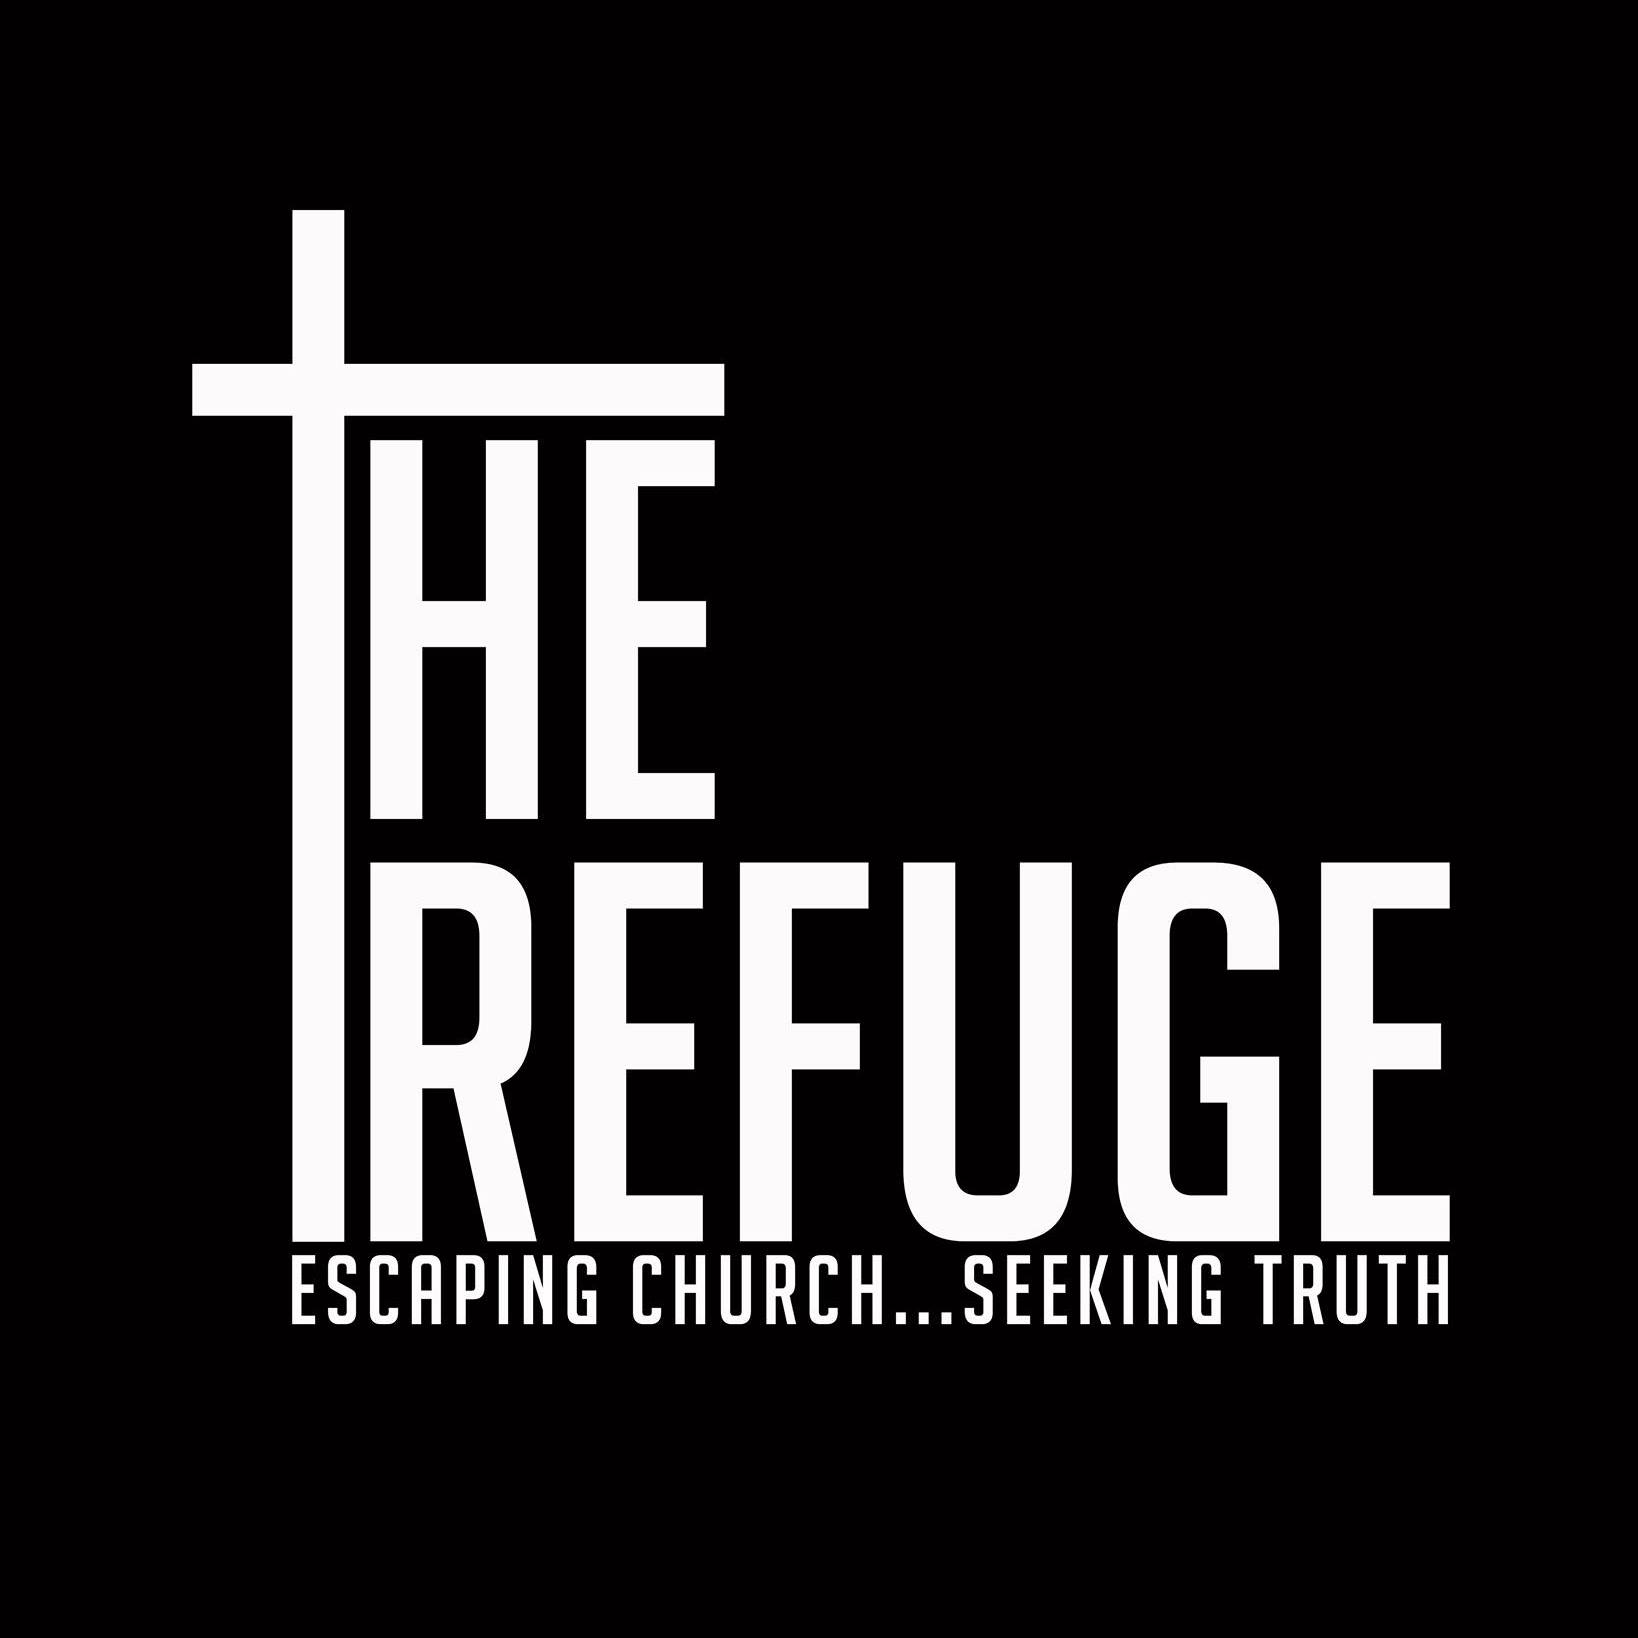 The Refuge